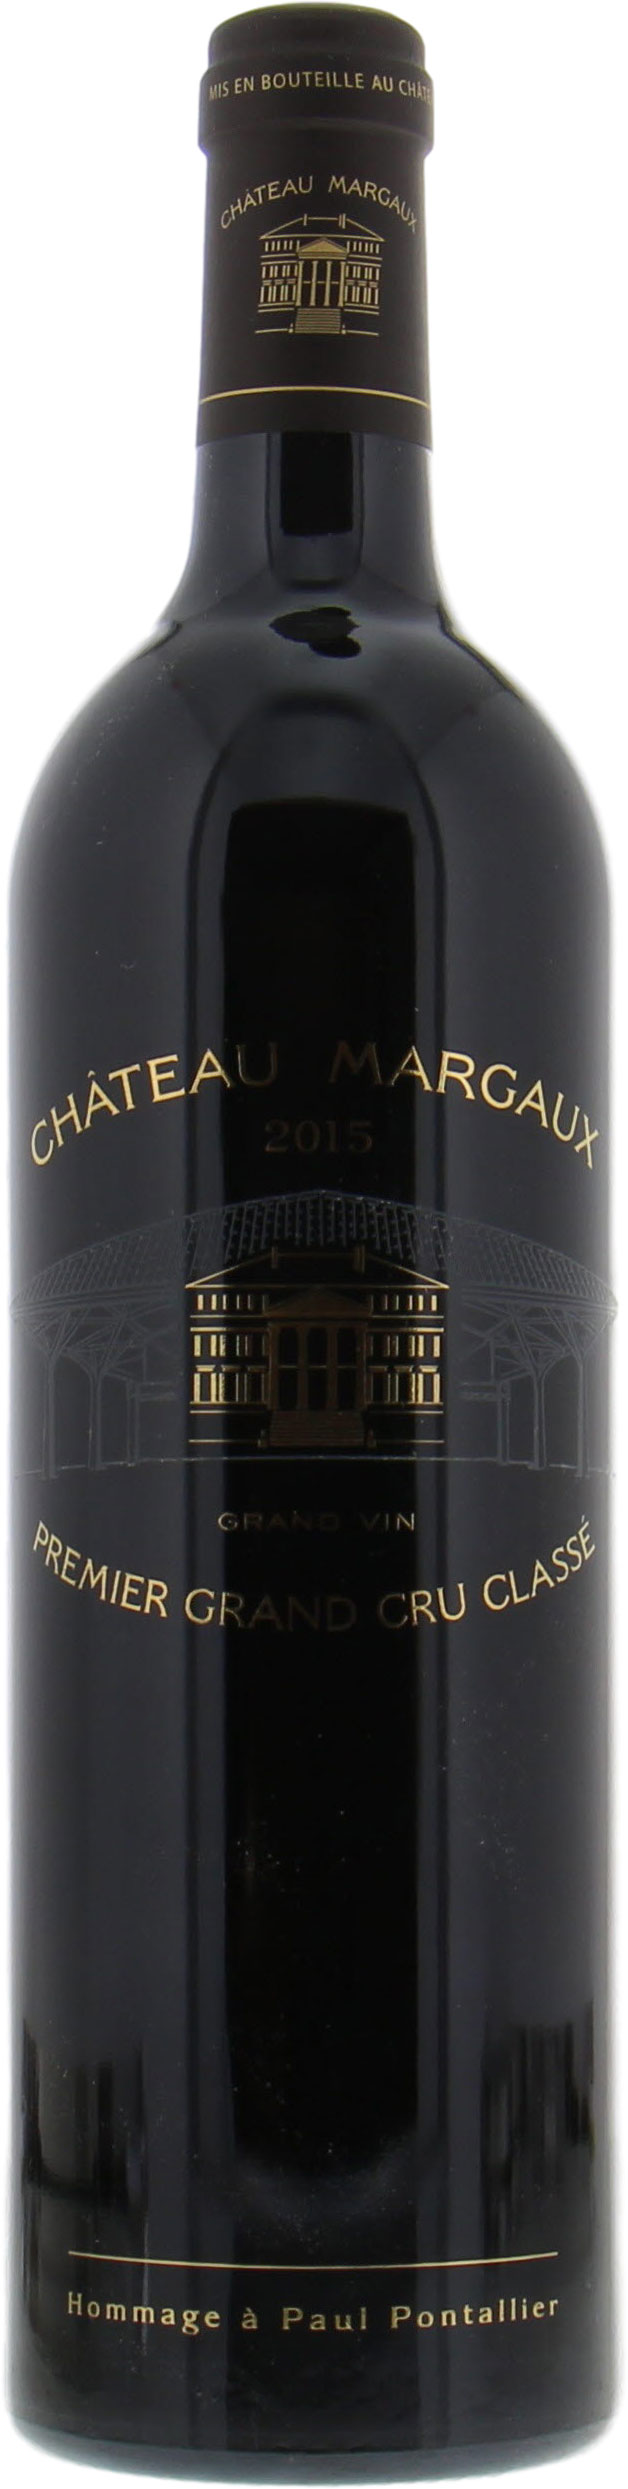 Chateau Margaux - Chateau Margaux 2015